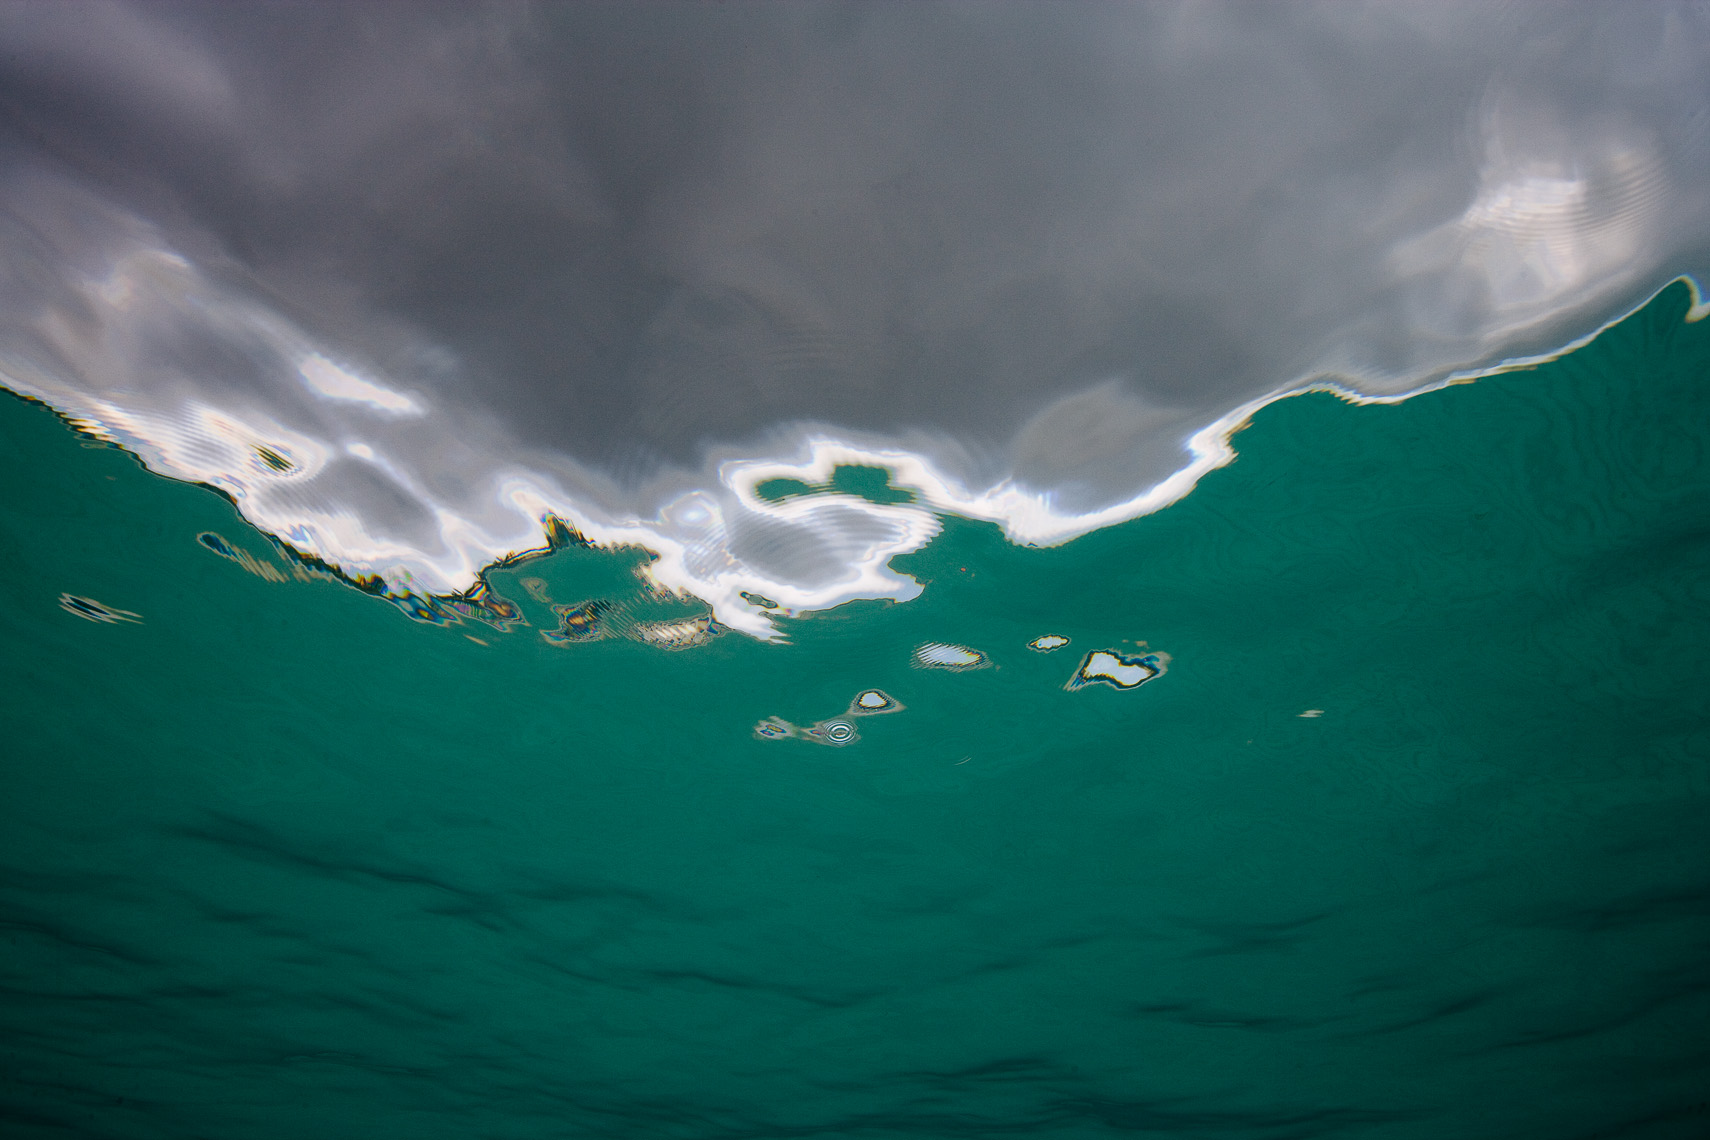 Tim Calver - Underwater Photography